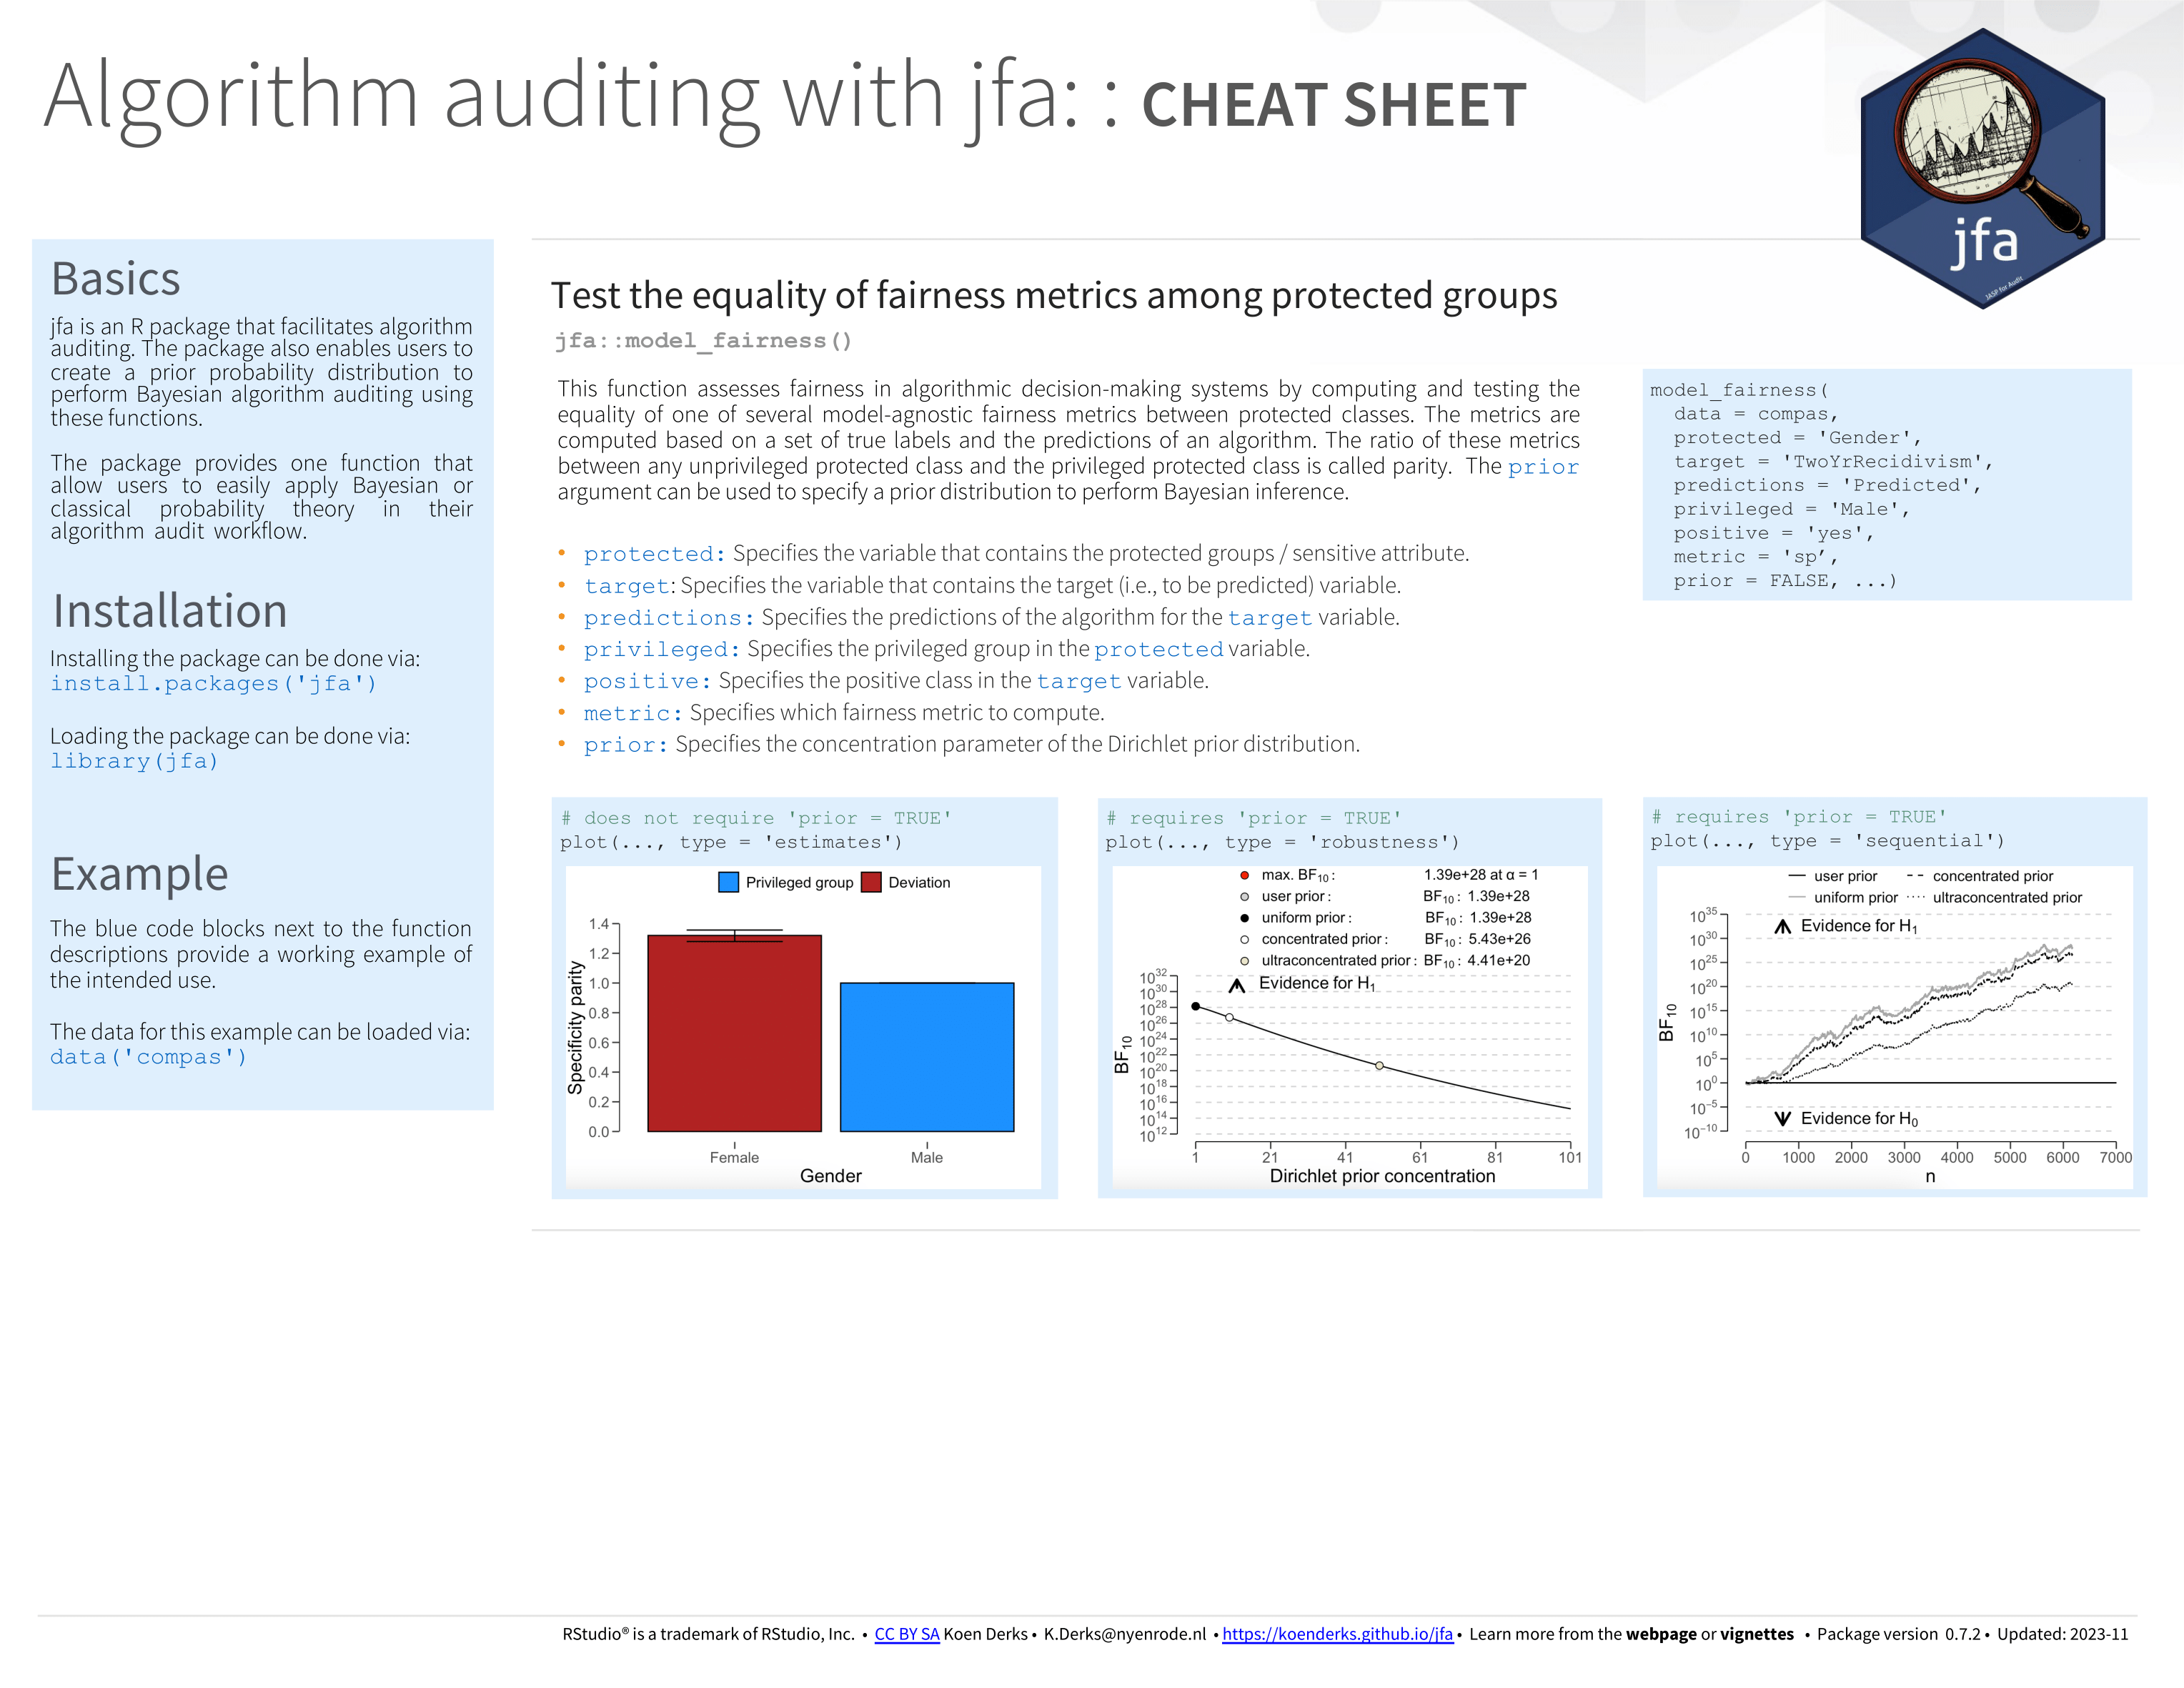 cheatsheet-algorithm